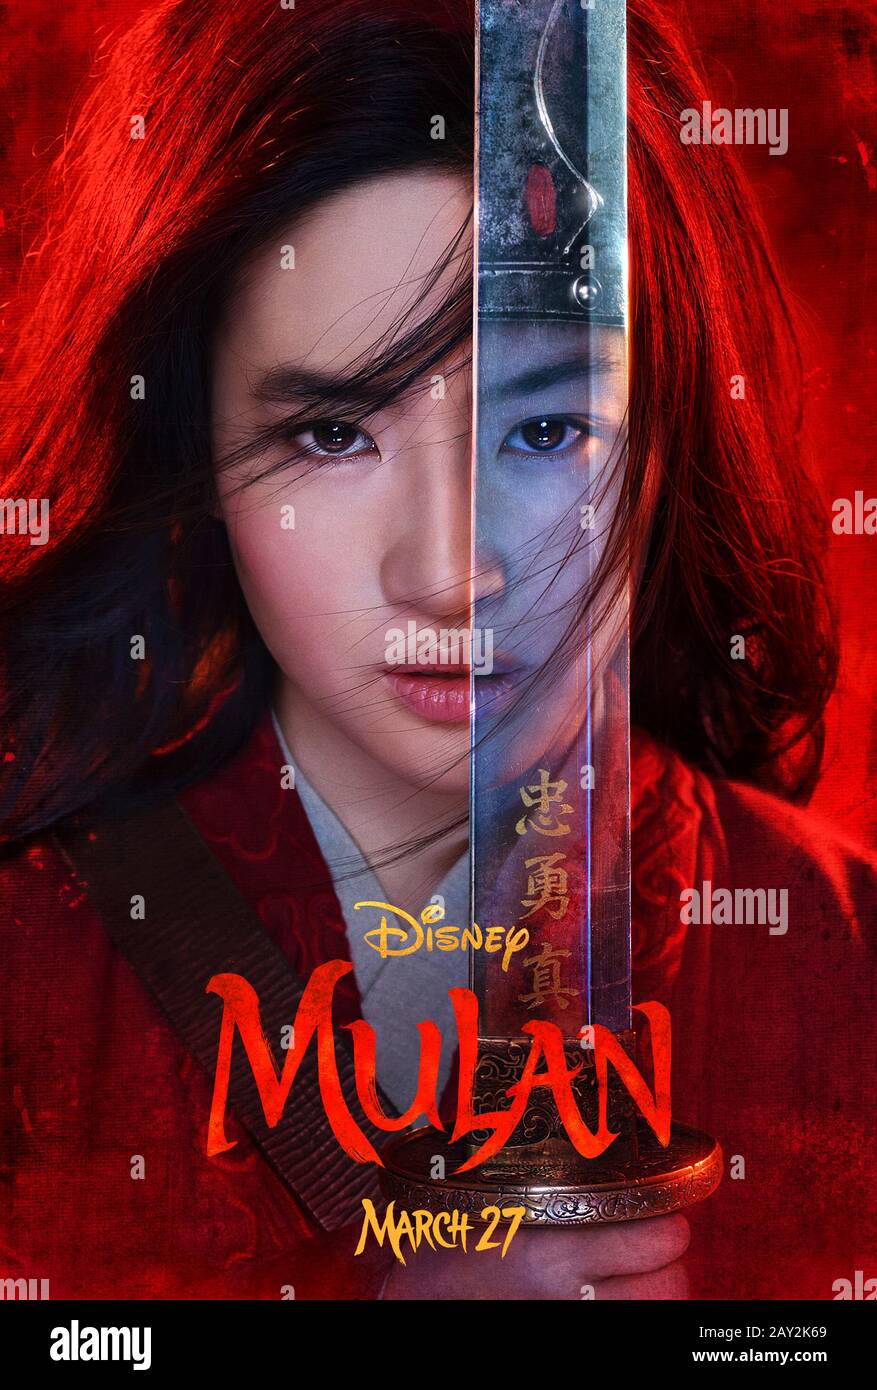 Mulan (2020) réalisé par Niki Caro et avec Yifei Liu, Donnie Yen, Jet Li et Li Gong. L'action en direct repart de l'animation de Disney de 1998 sur une femme chinoise qui se déguise en homme pour sauver son père. Banque D'Images